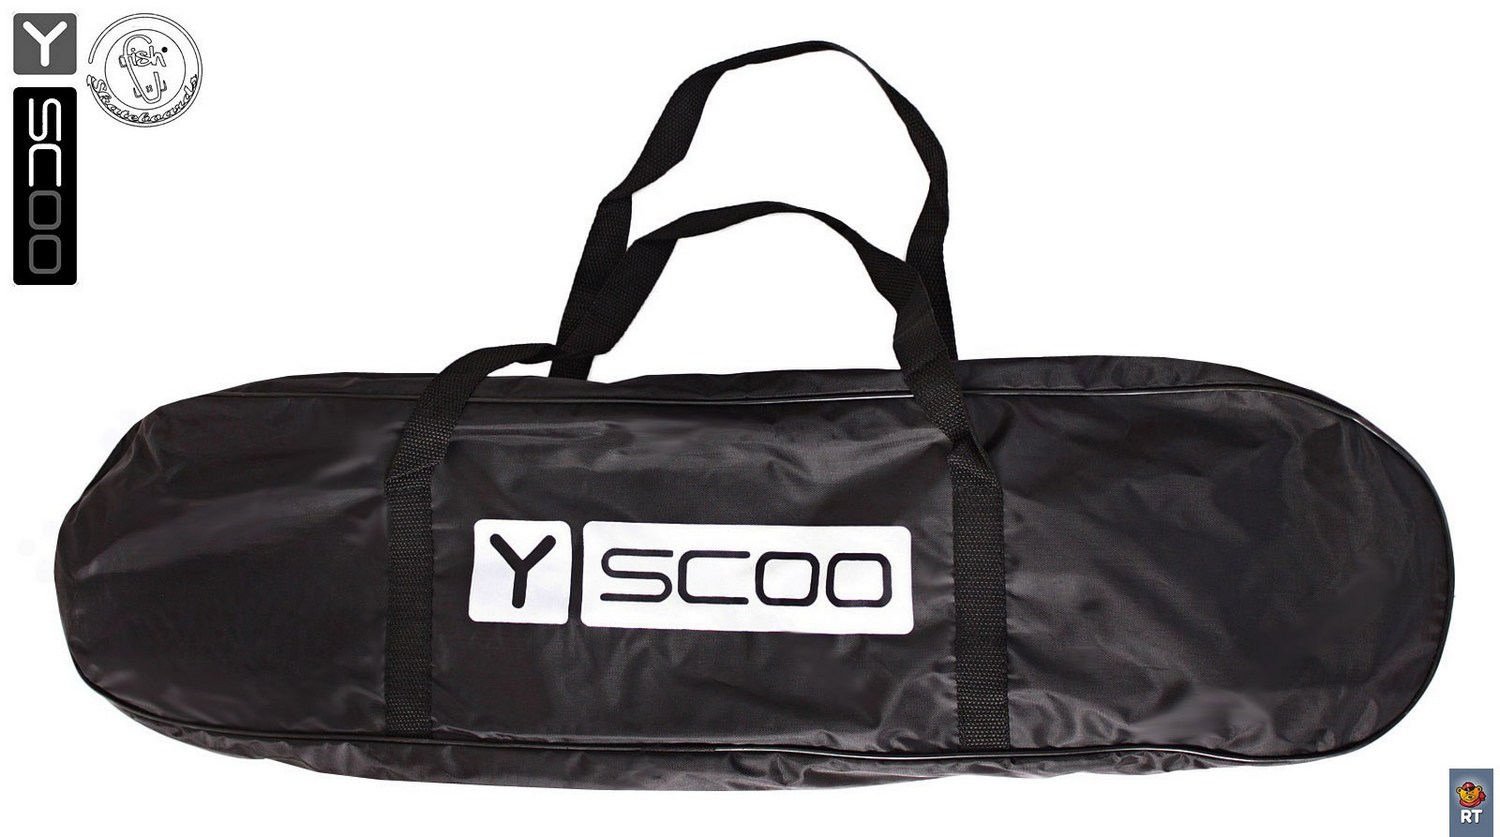 Скейтборд виниловый Y-Scoo Big Fishskateboard metallic 27" 402H-O с сумкой, оранжевый с черными колёсами  